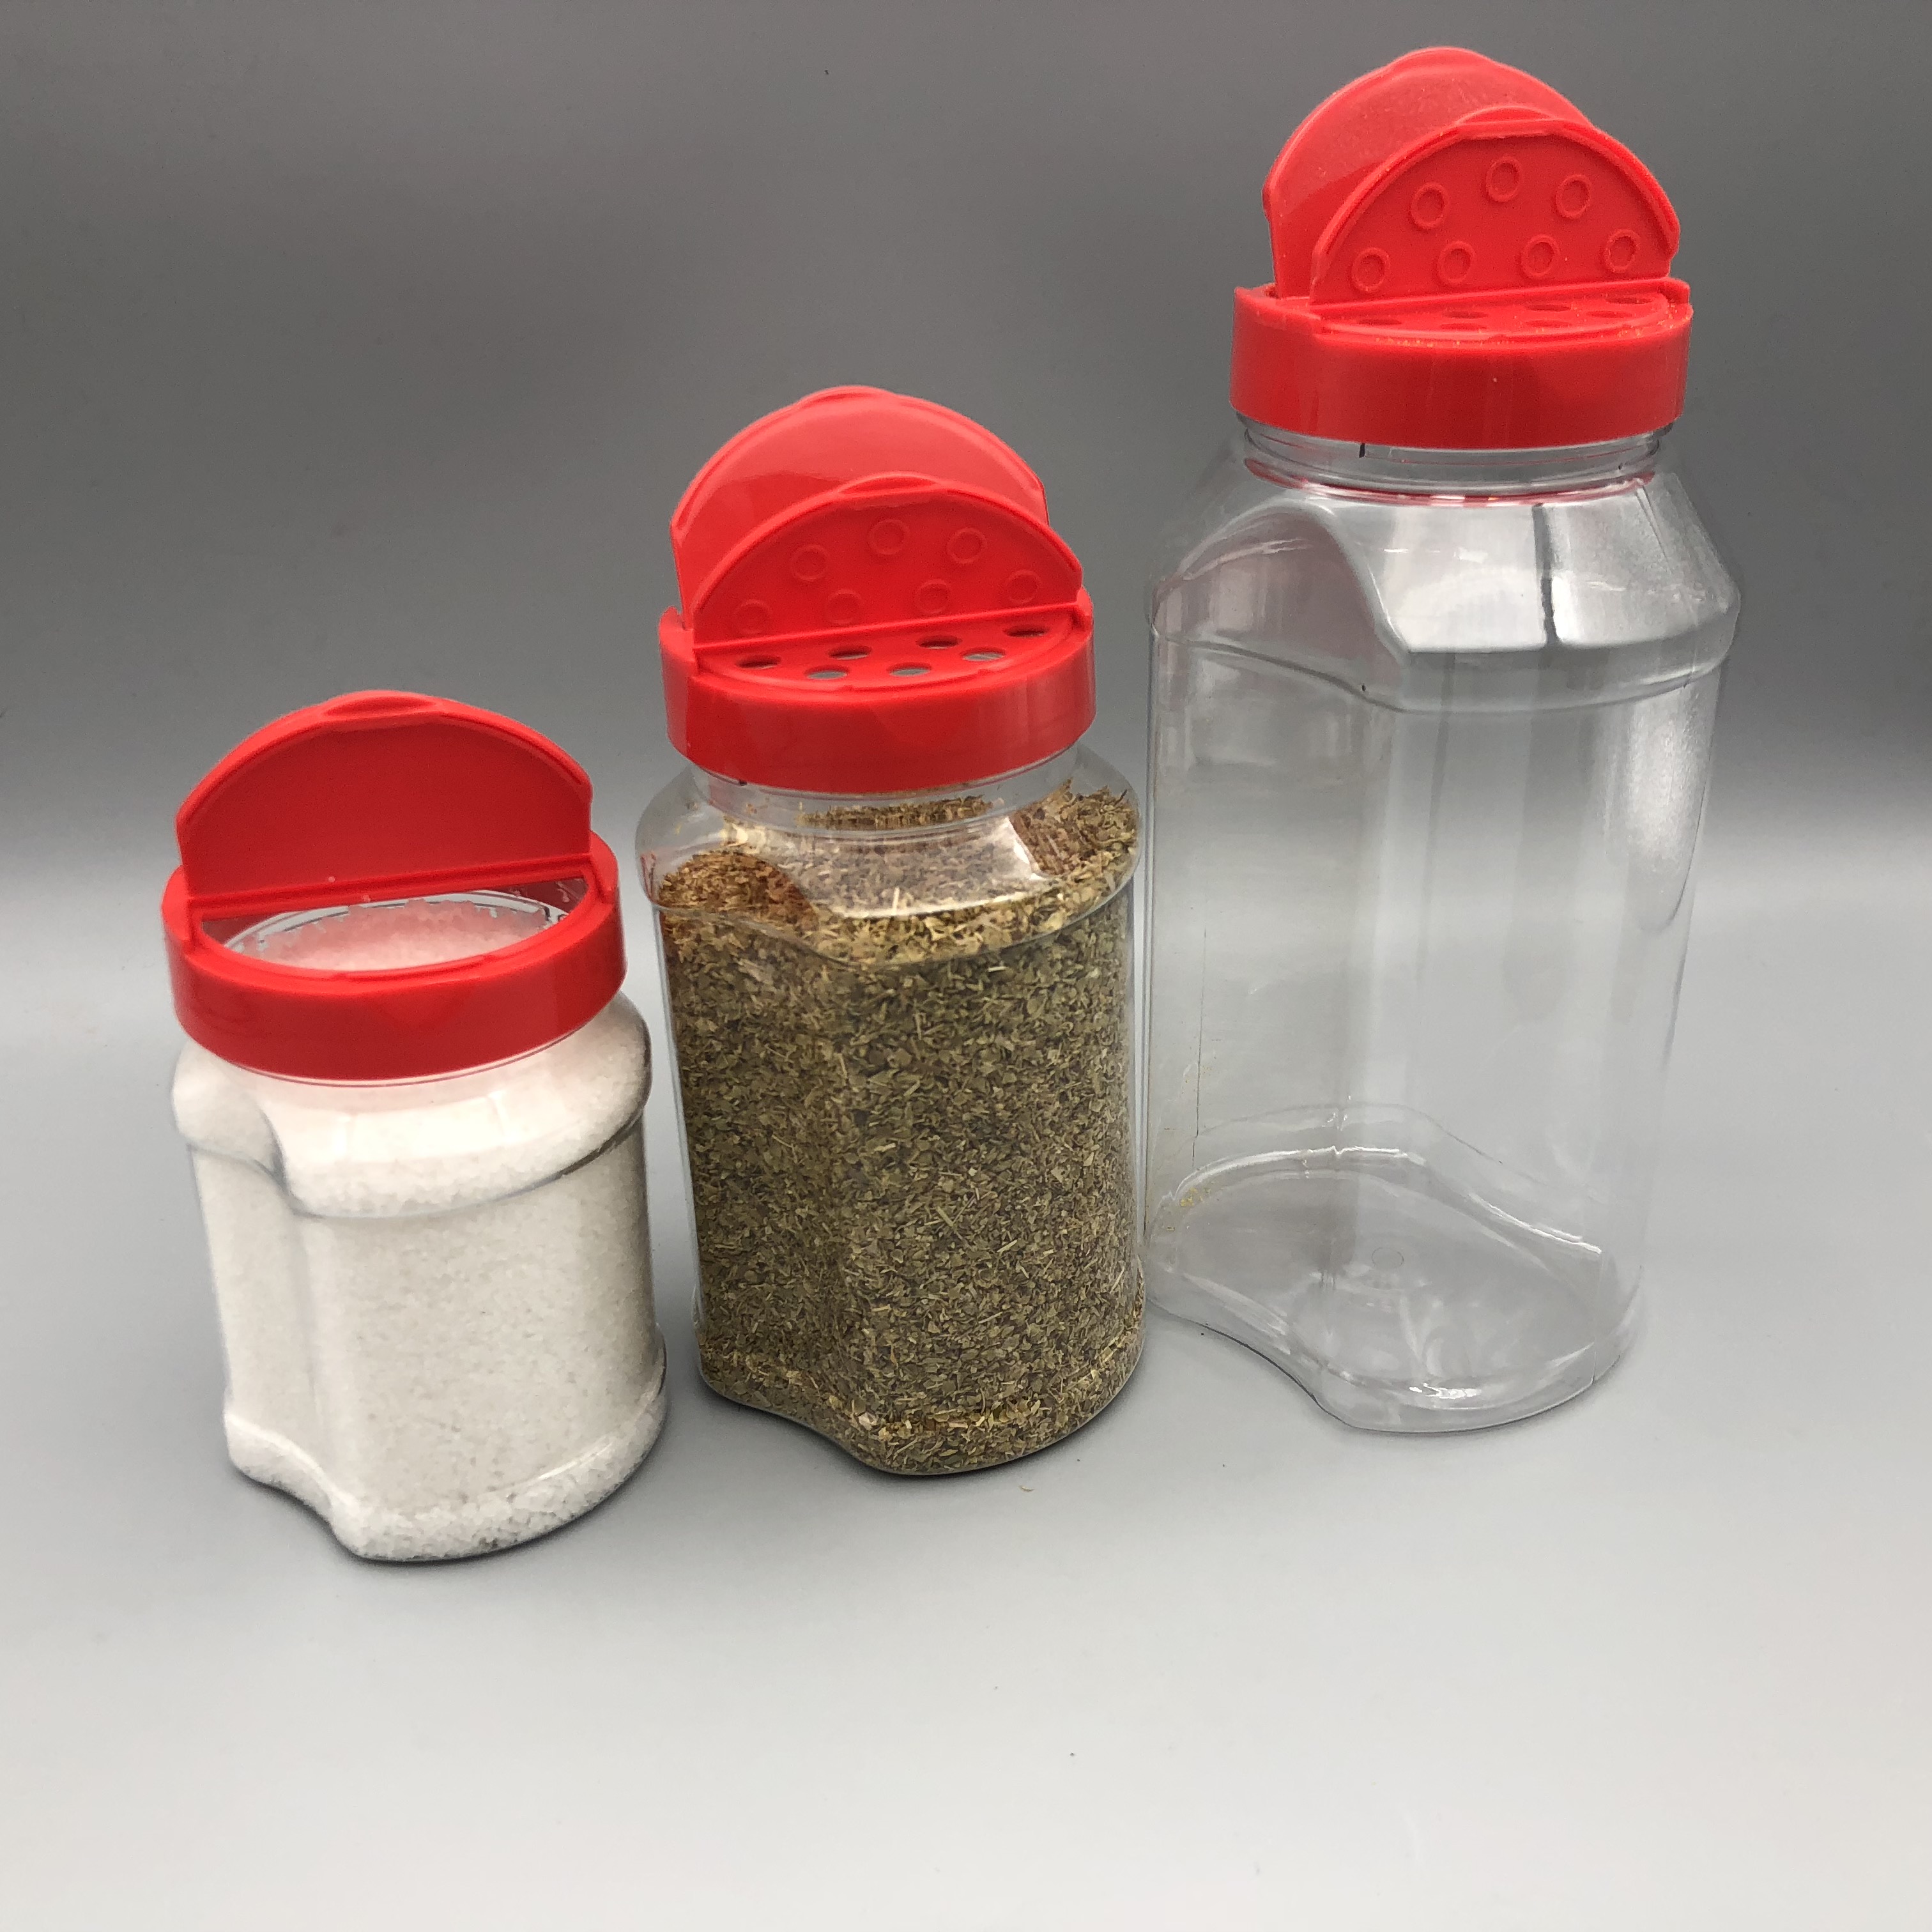 FDA certification 300ml 900ml 500ml plastic Home seasoning salt pepper shaker bottle sifter cap packaging spice jar set